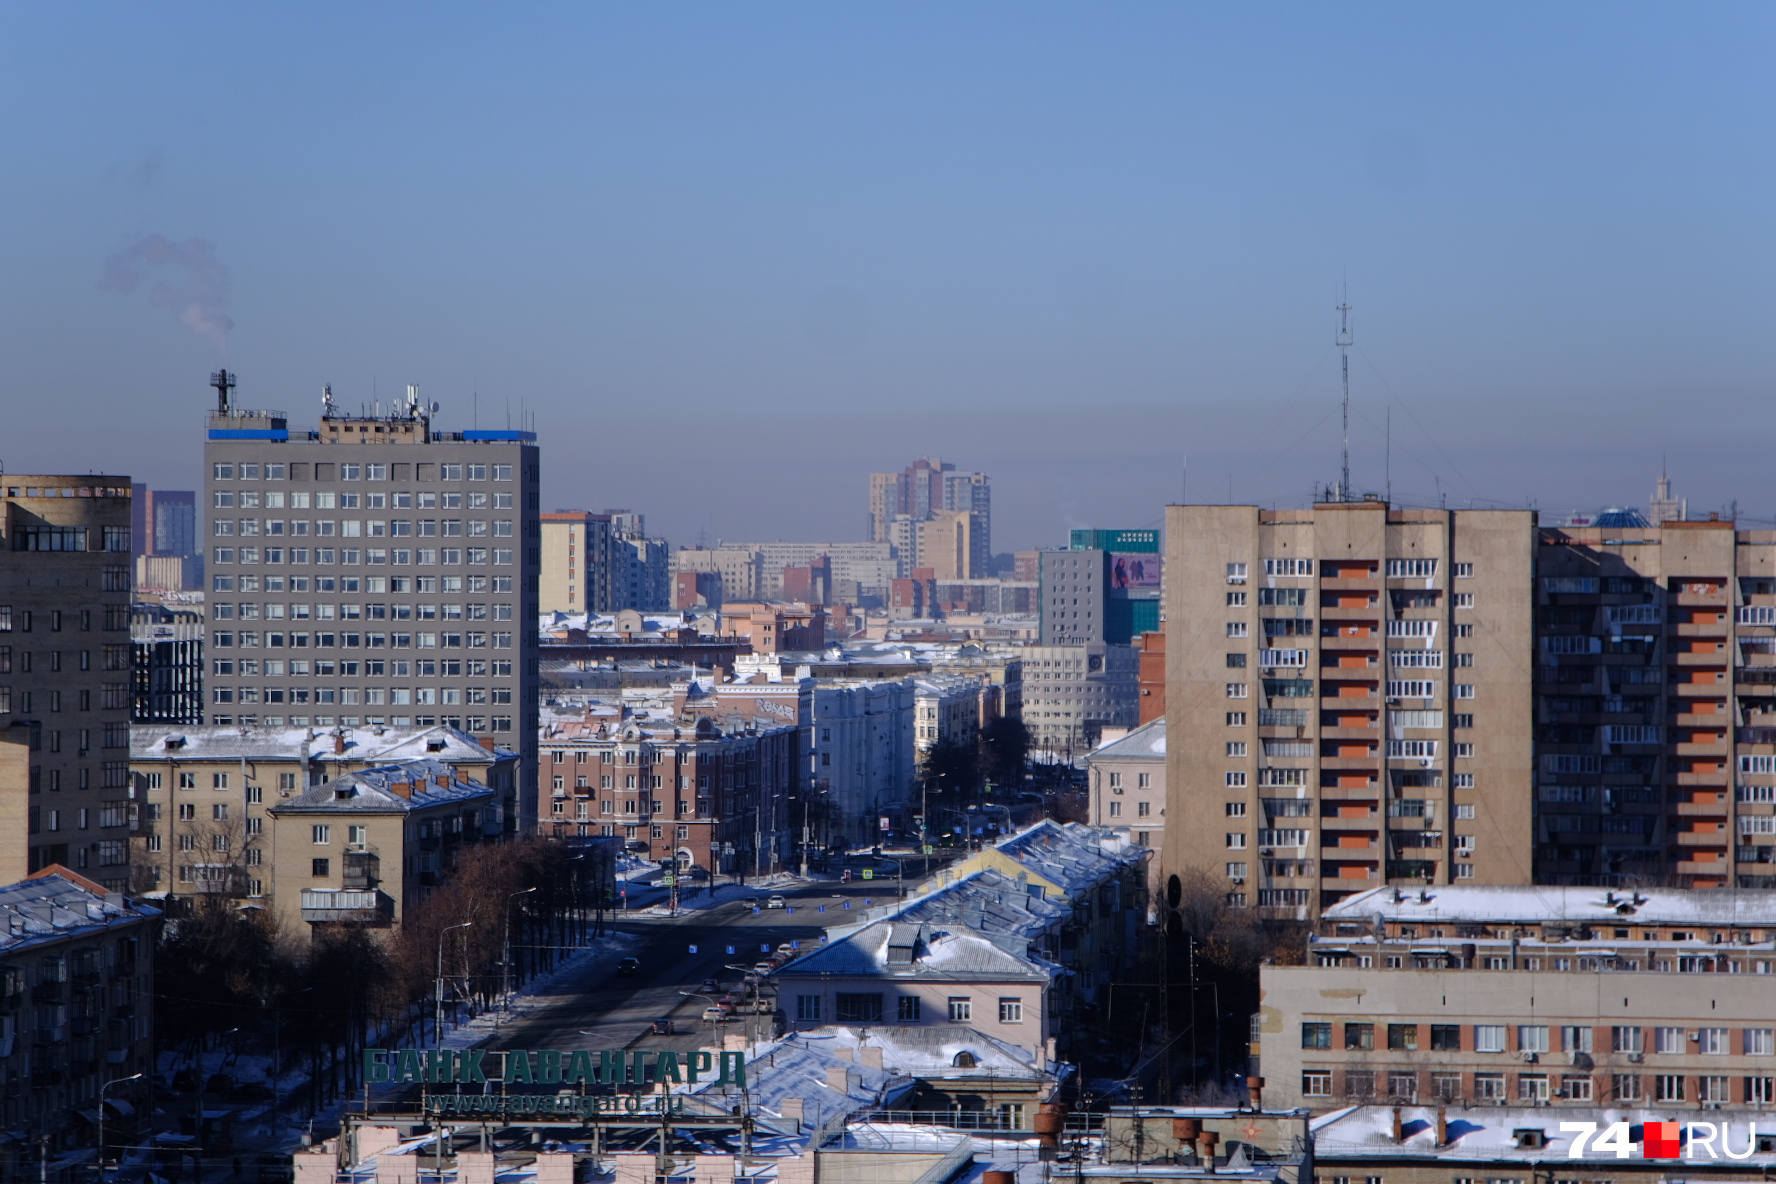 В центре Челябинска тоже наблюдается дымка